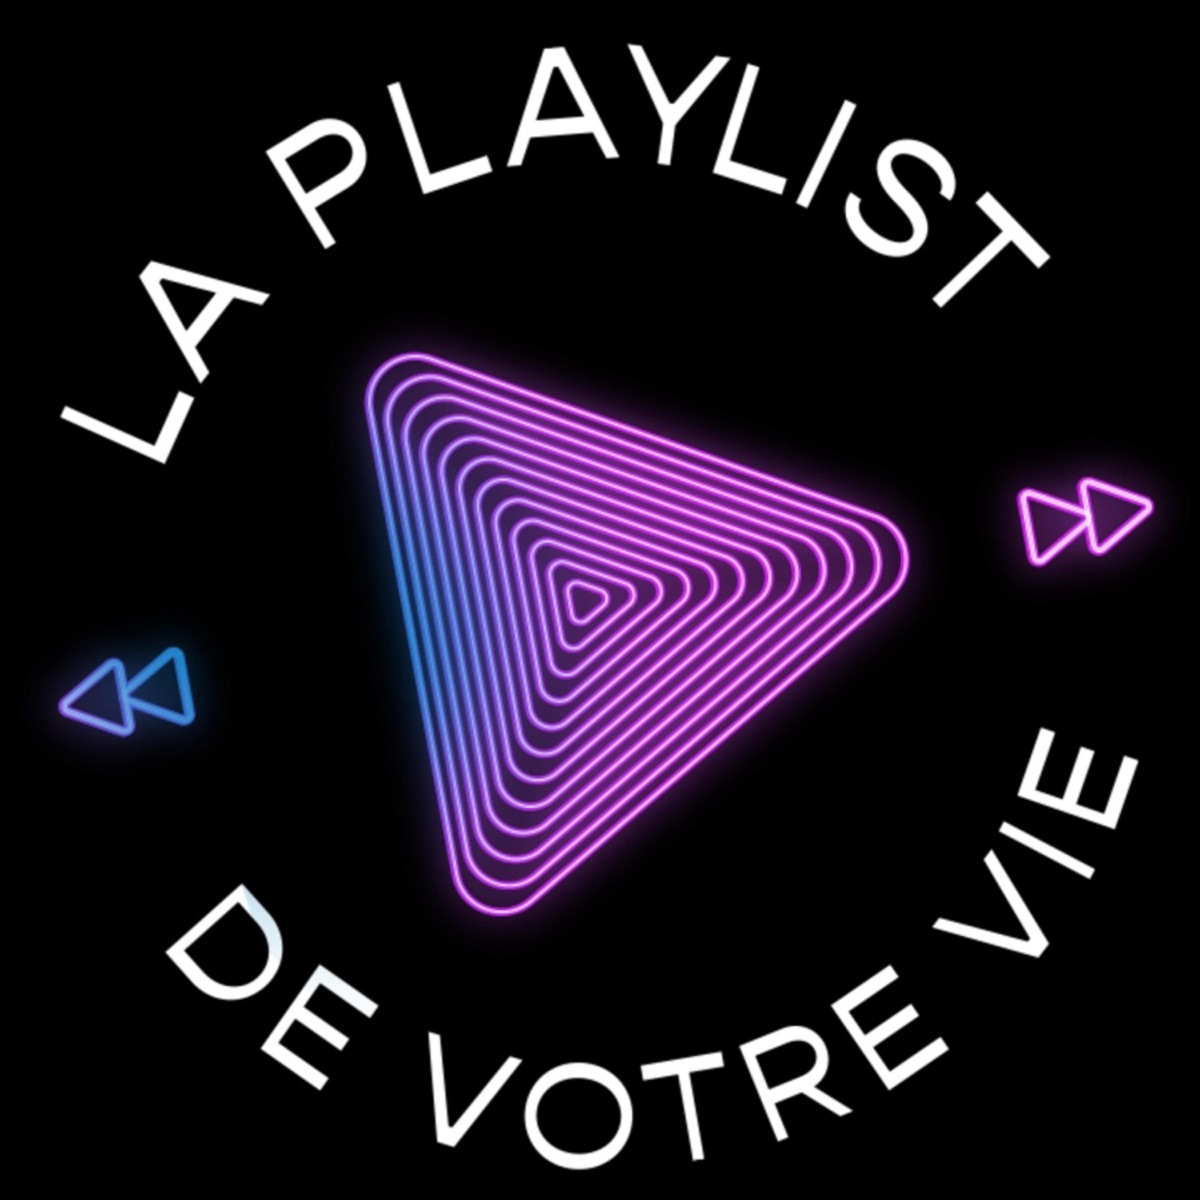 Standards de la Chanson Française - playlist by Spotify